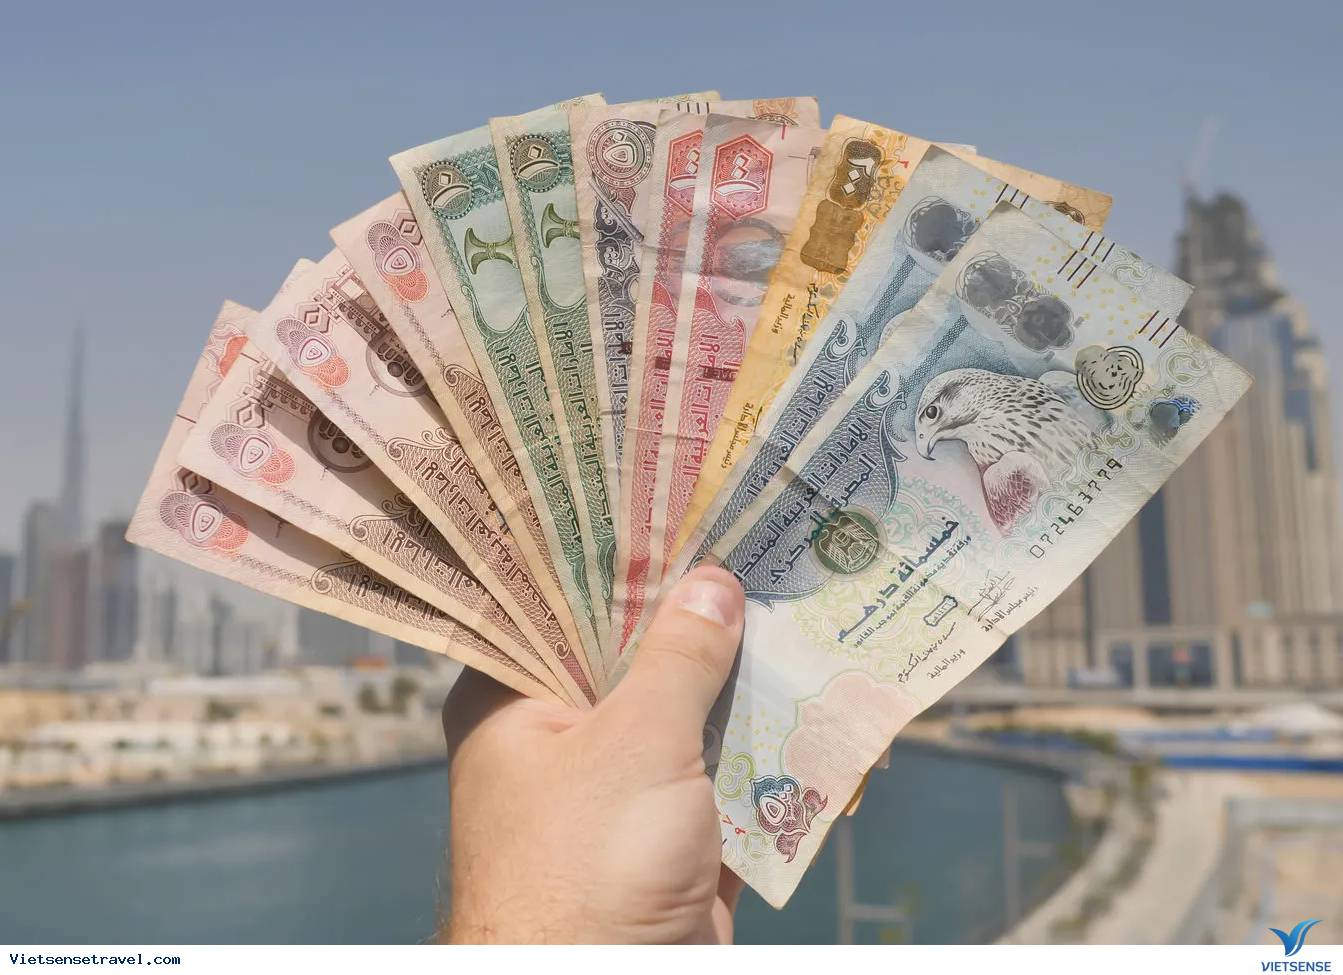 Bạn muốn đổi tiền Dirham Dubai sang tiền của quốc gia của mình? Hãy xem hình ảnh liên quan đến đổi tiền Dirham Dubai để biết thêm về quy trình đổi tiền và các mẹo nhỏ để tiết kiệm thời gian và chi phí.